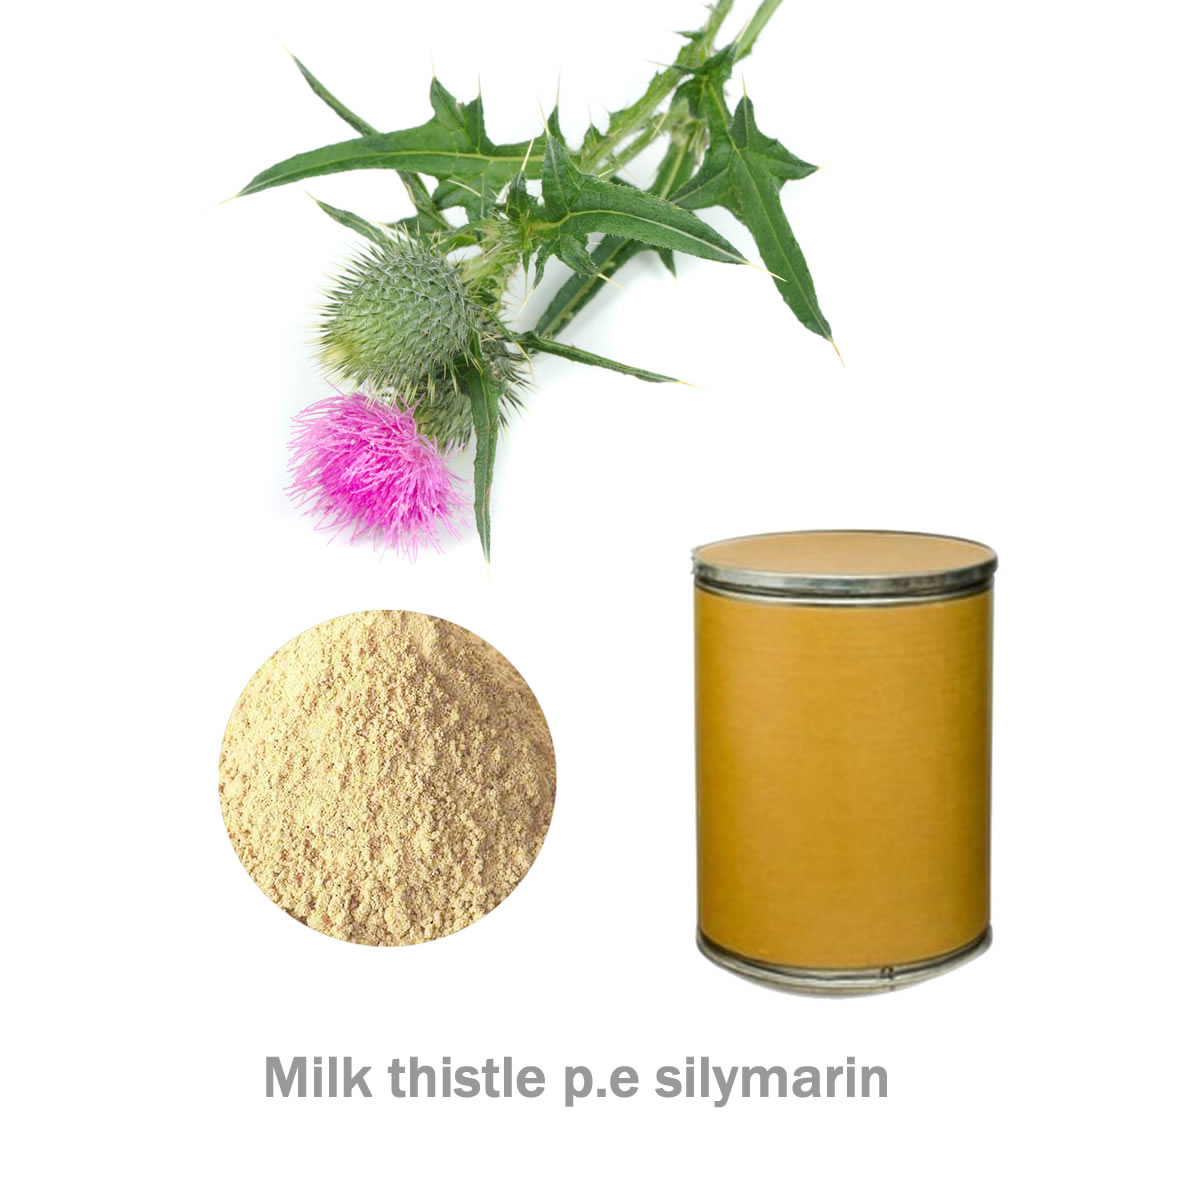 milk thistle Extract p.e silymarin